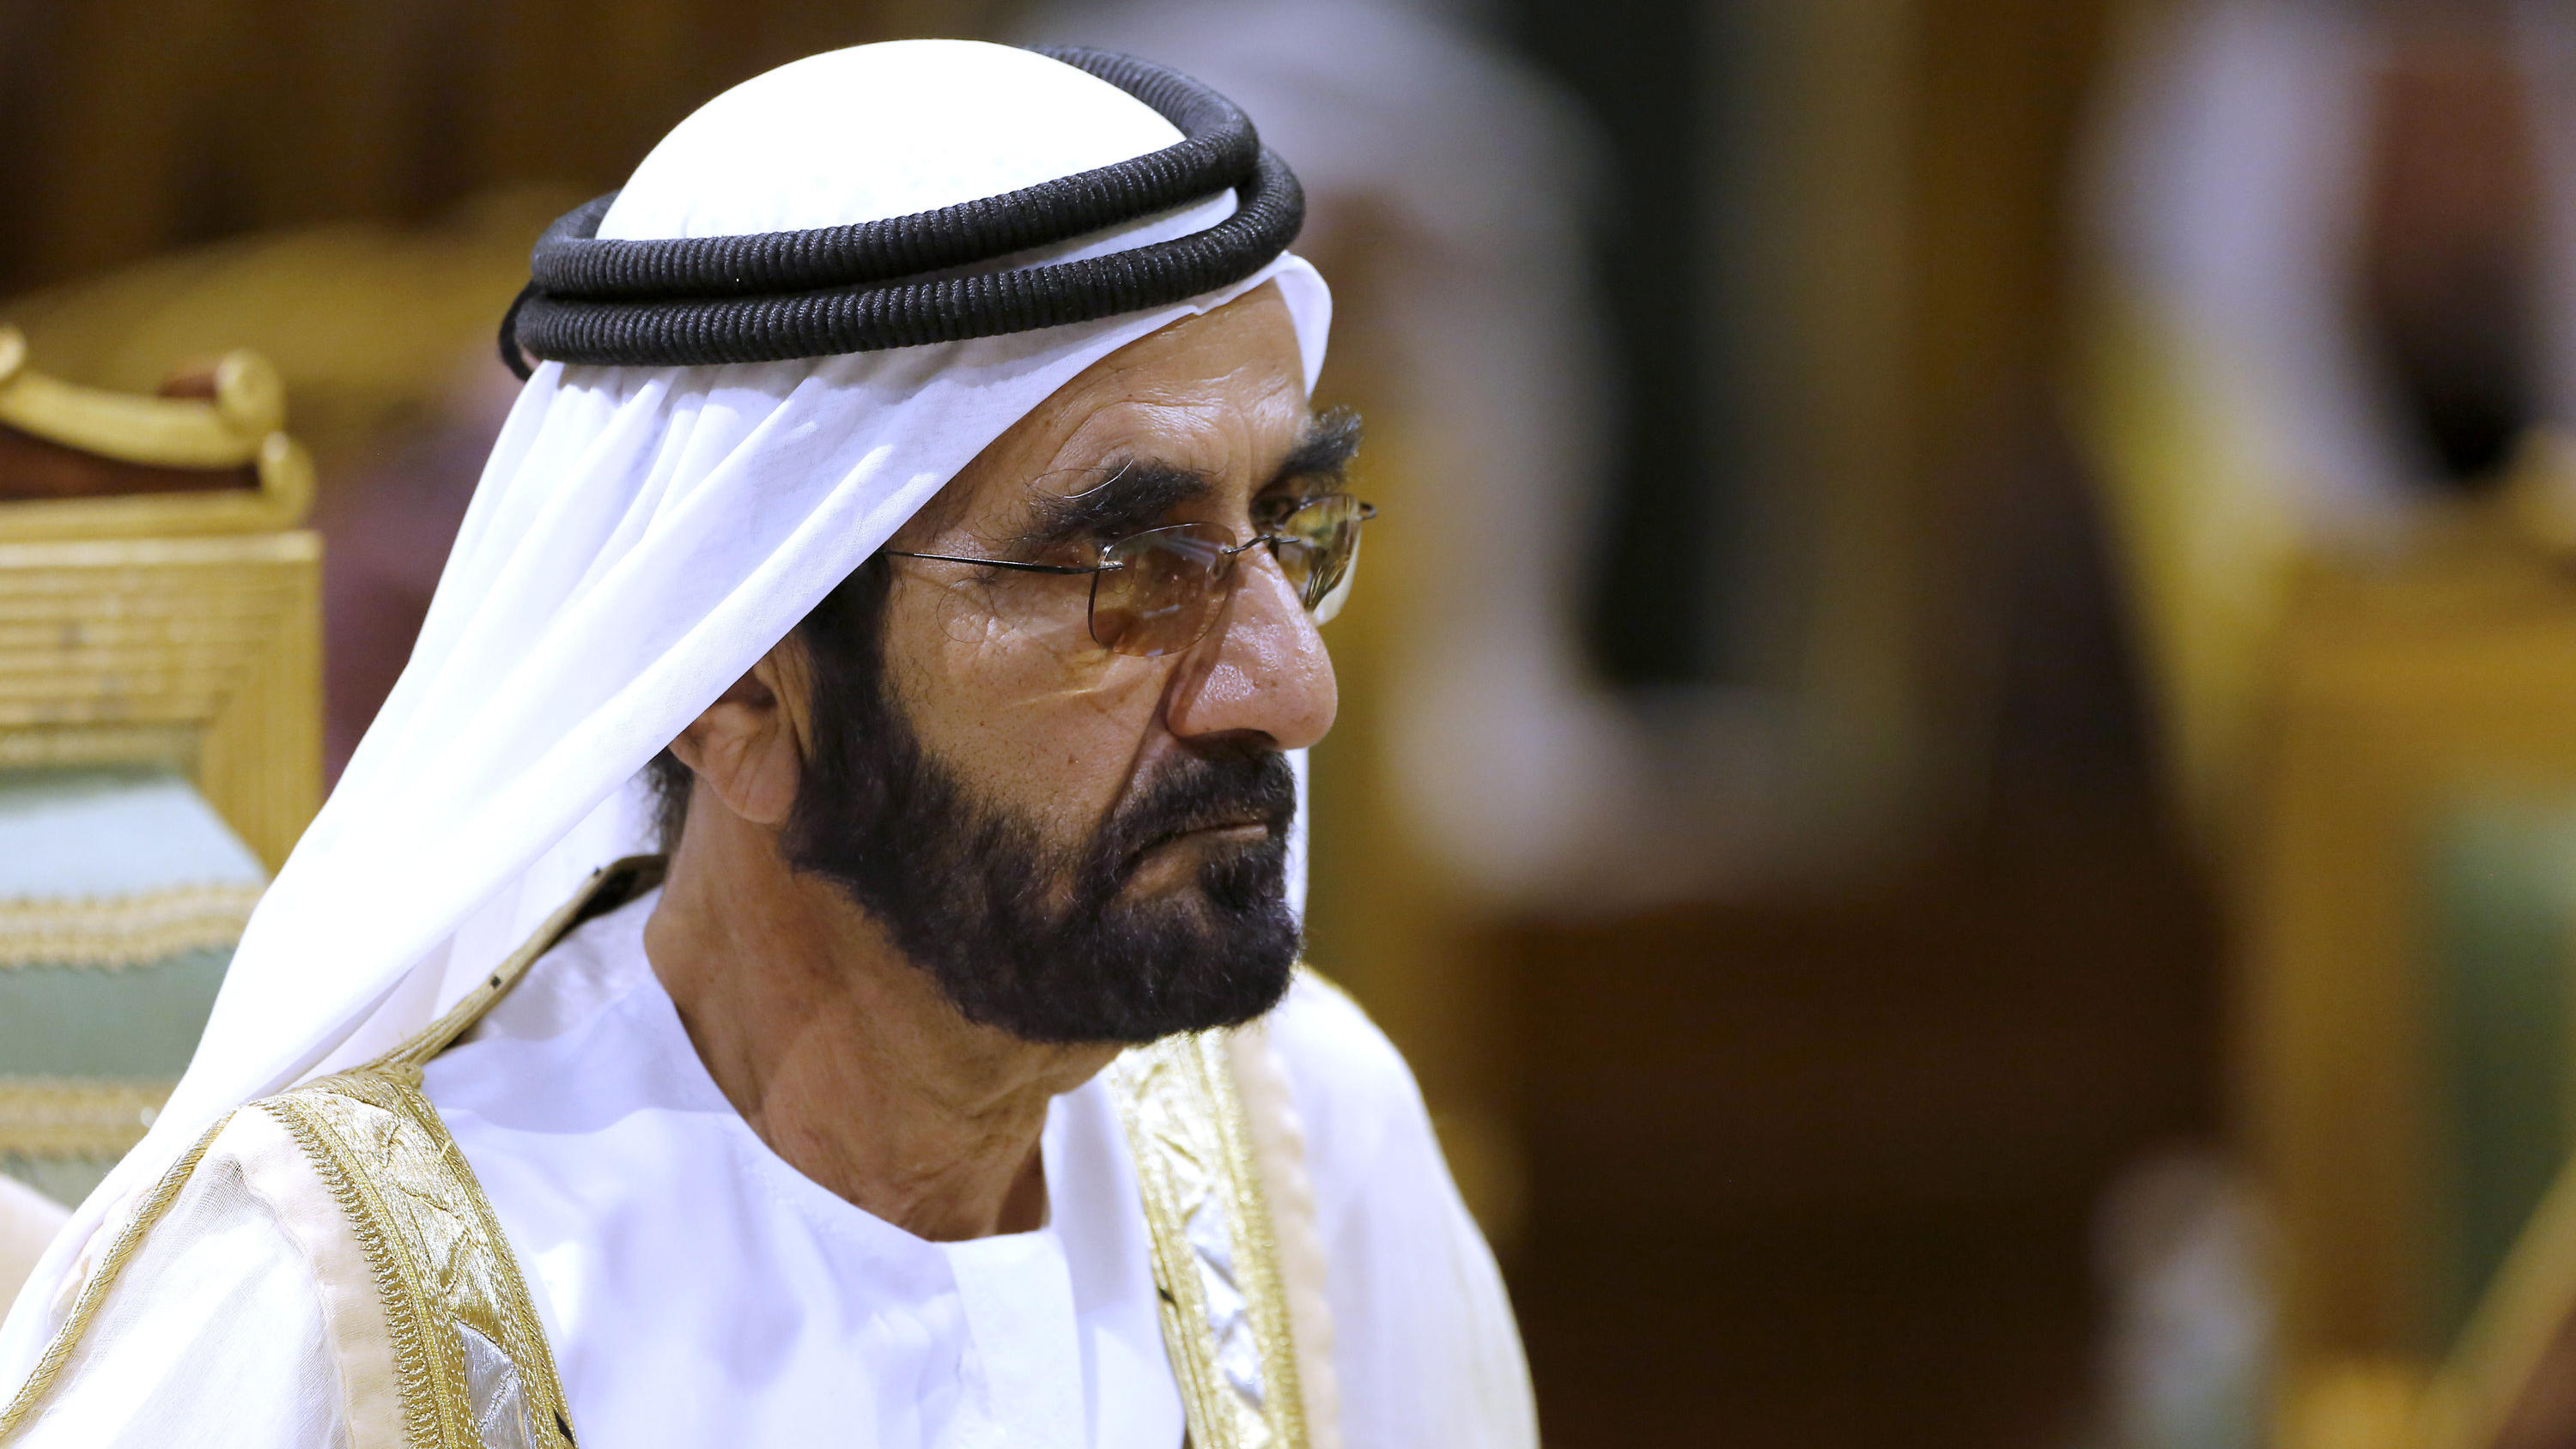 Der Emir von Dubai, Mohammed bin Raschid al-Maktum soll seine Tochter Prinzessin Latifa gegen ihren Willen in Dubai festhalten